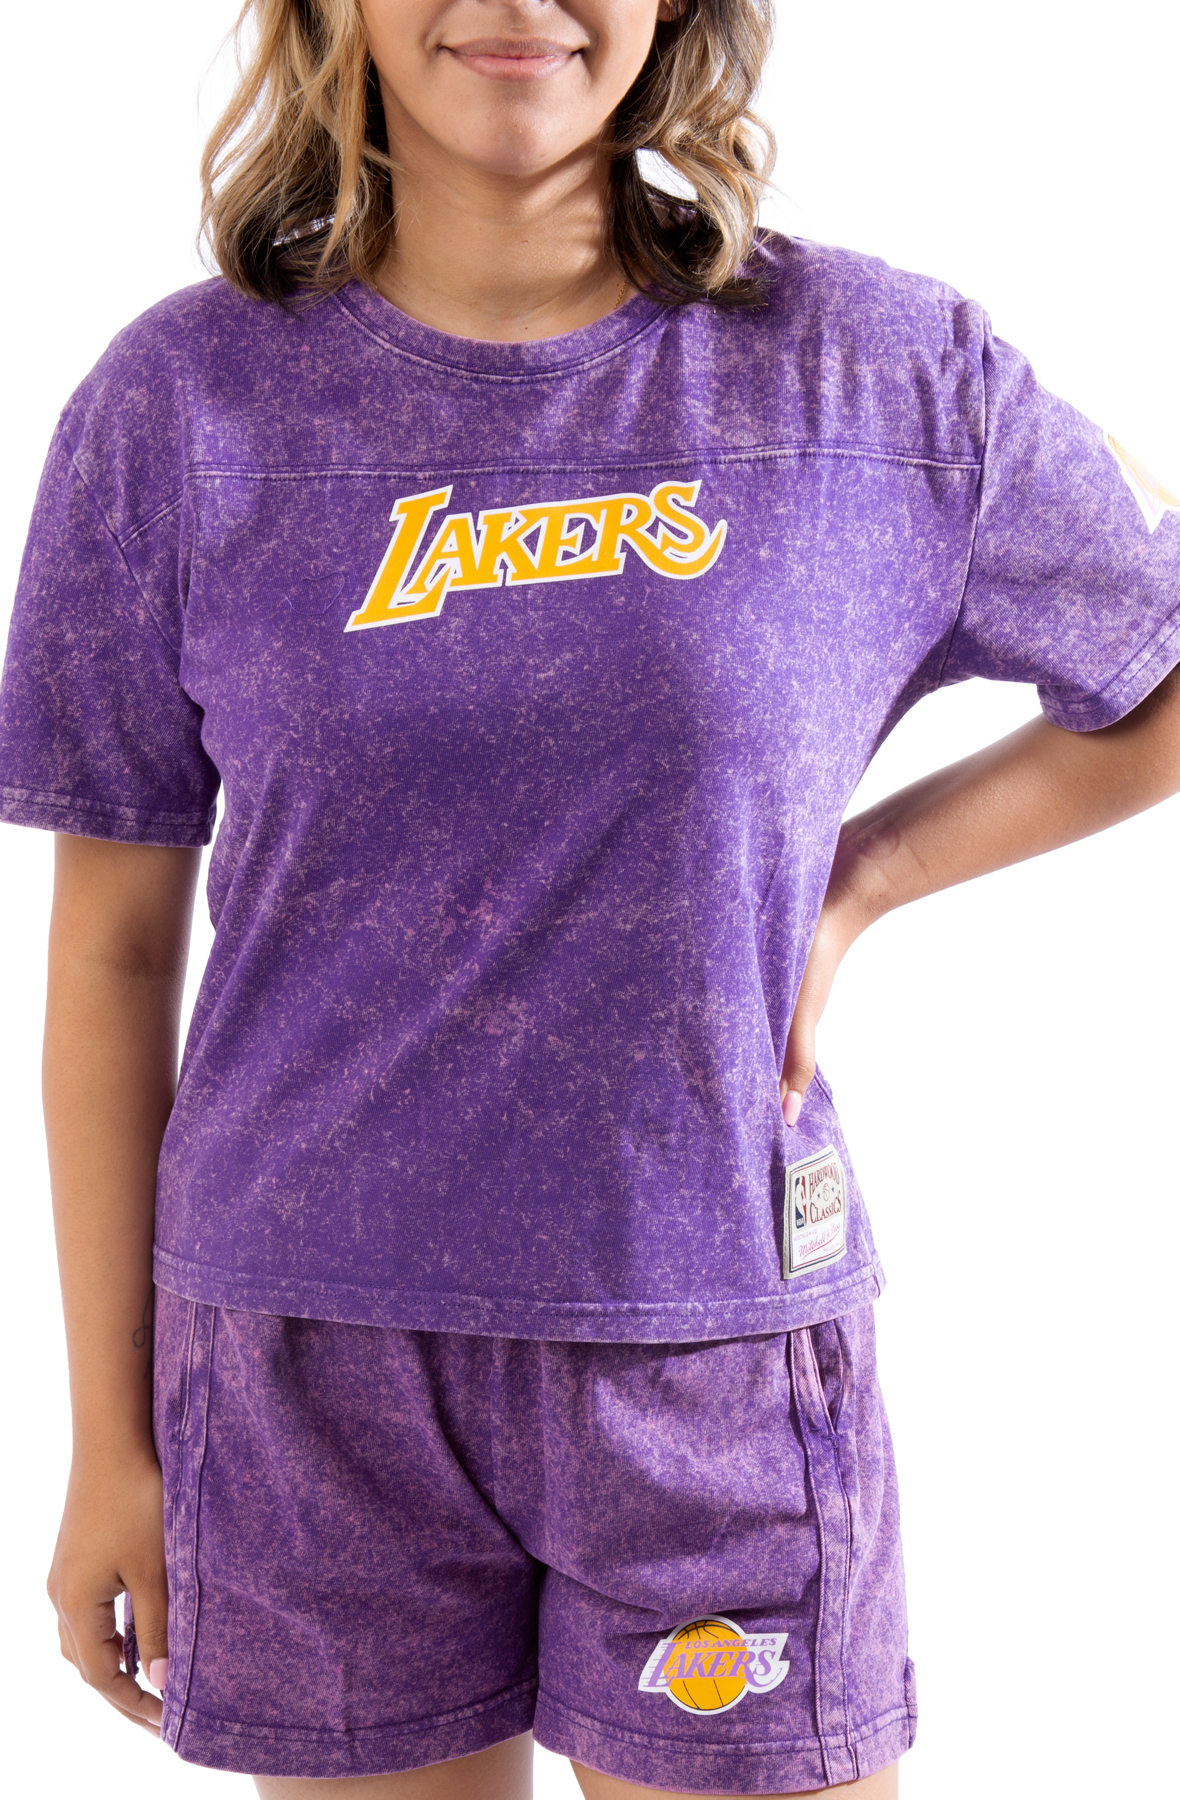 Lakers T-shirt and Shorts Set